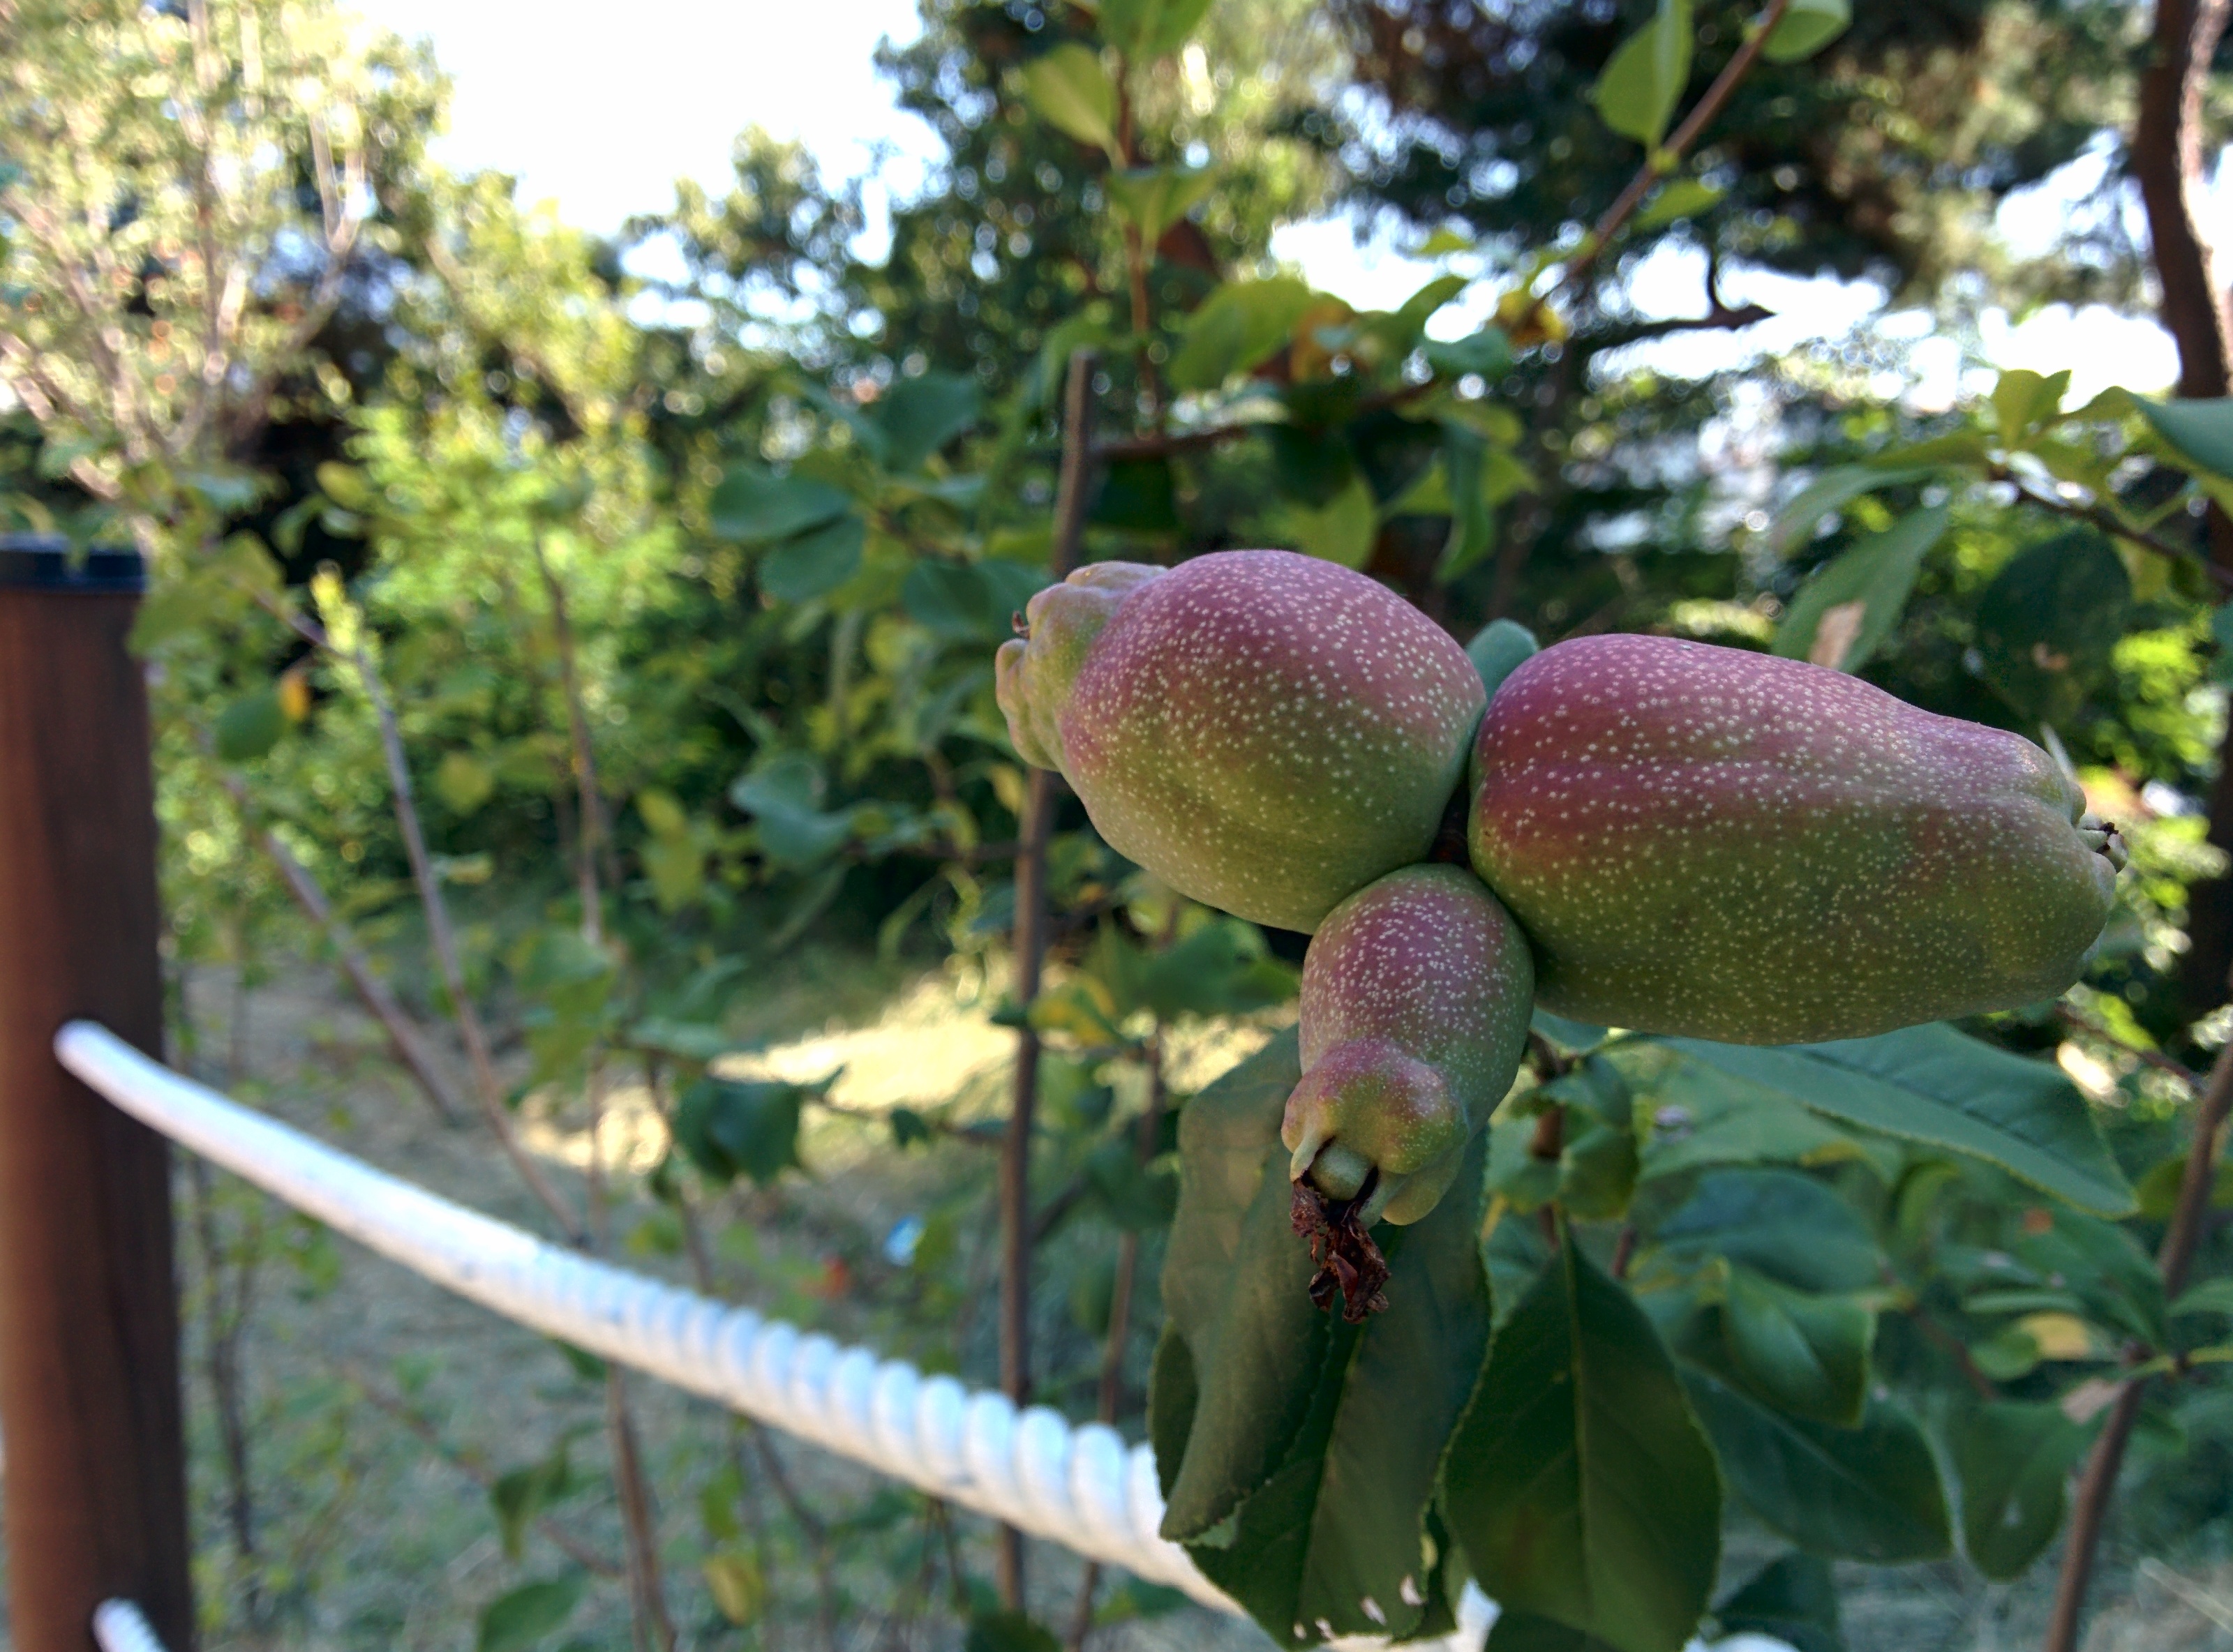 IMG_20150909_144319.jpg 길가 울타리에서 열매를 맺은 명자나무(산당화)